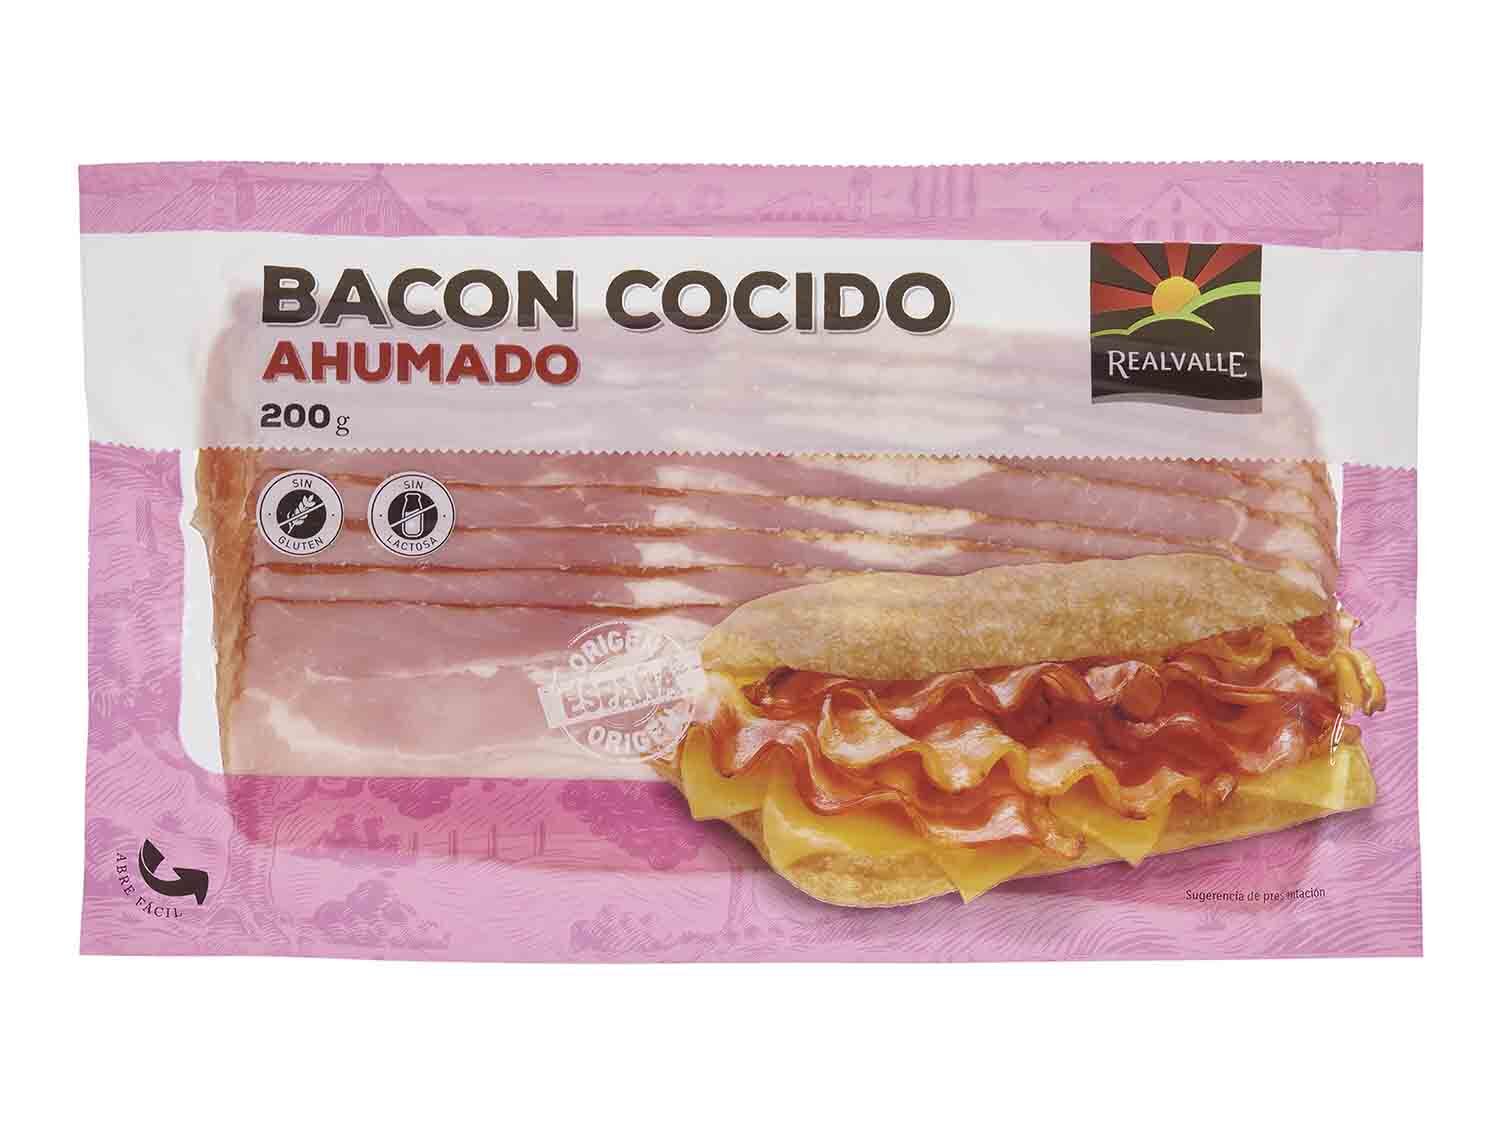 Bacon cocido ahumado